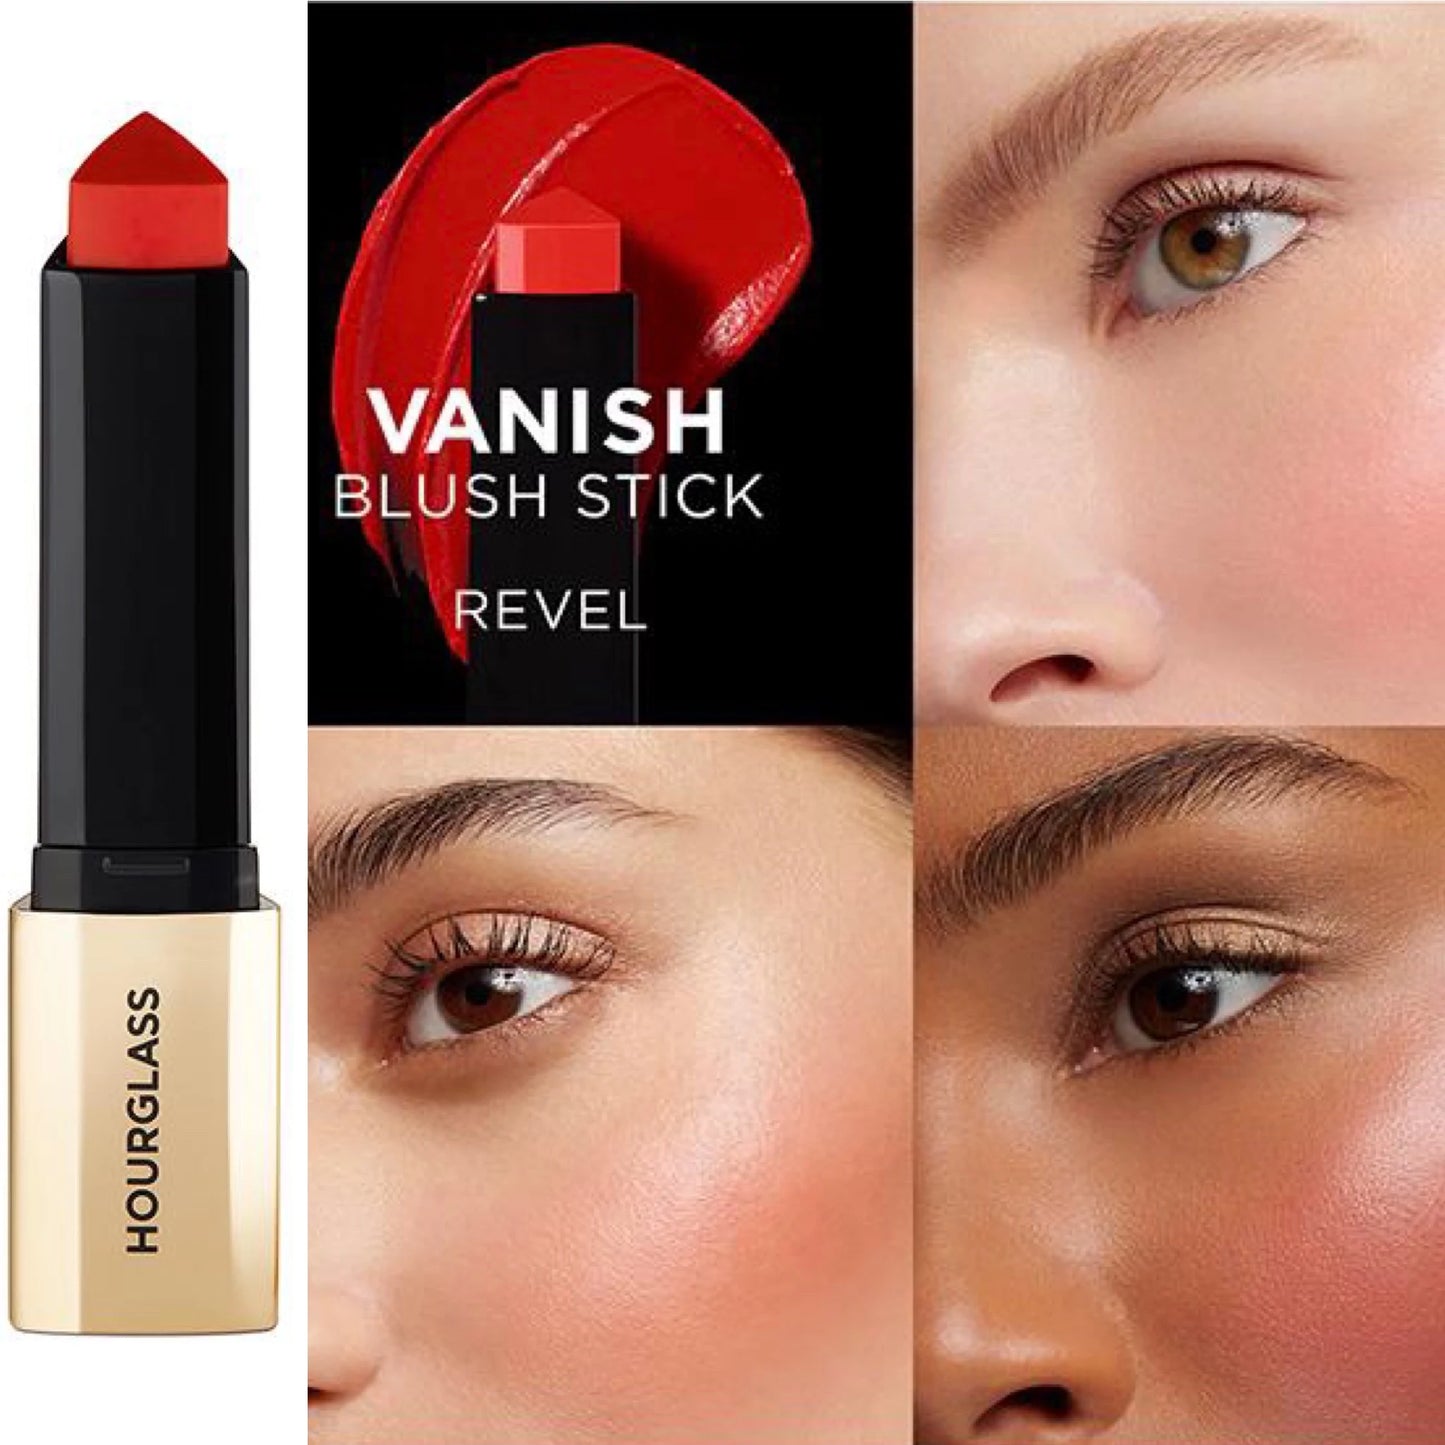 Vanish™ Blush Stick-Revel - warm scarlet